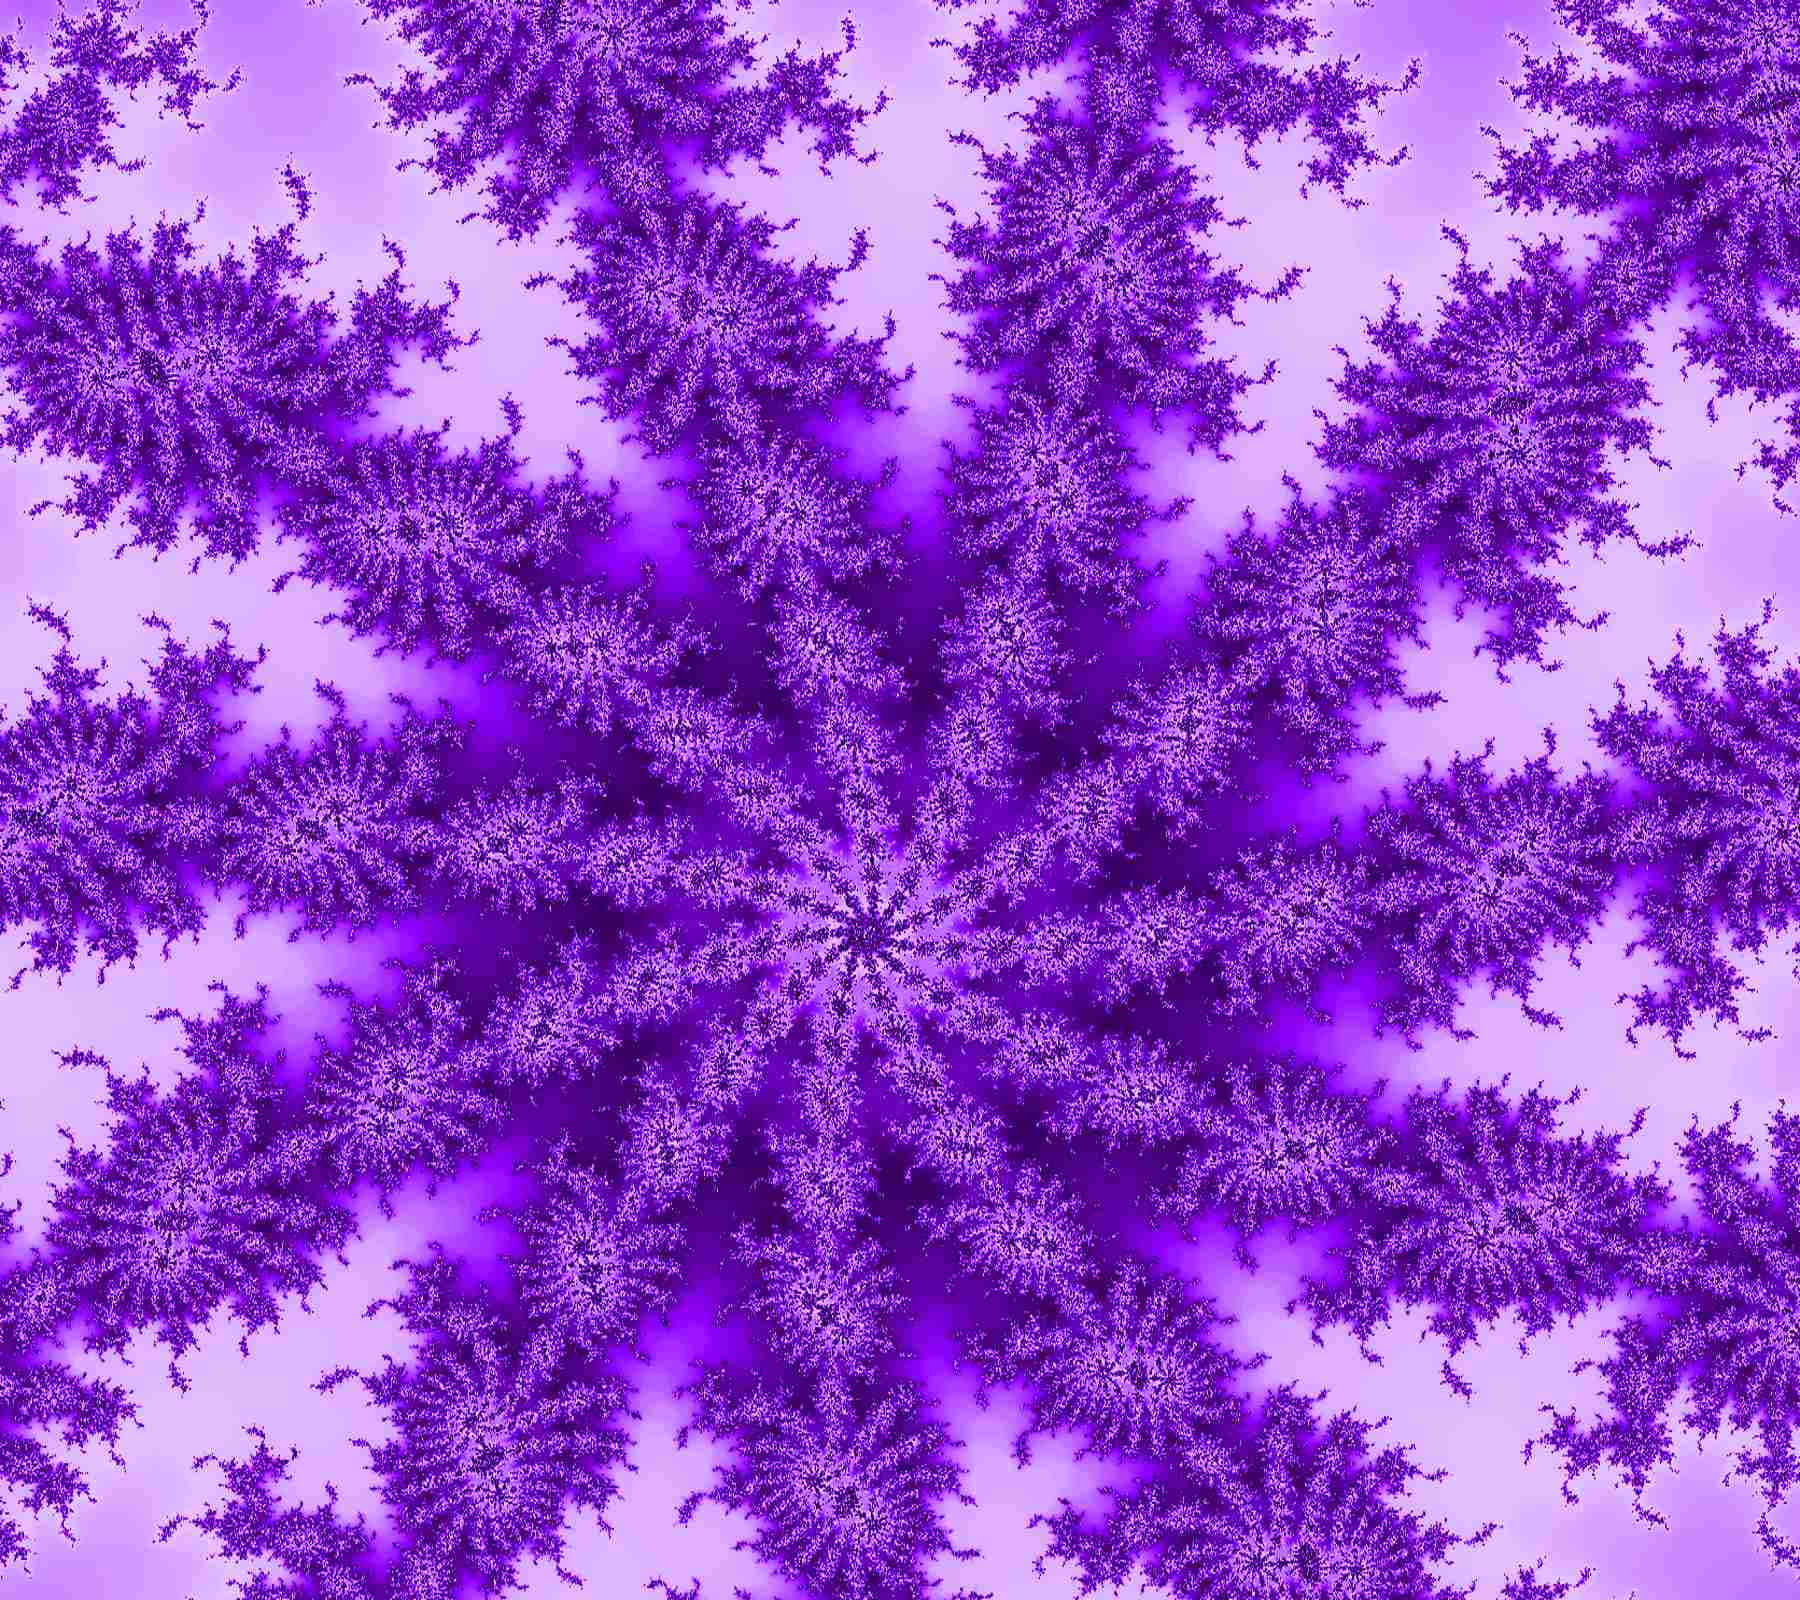 A swirl of vibrant purple dye. Wallpaper